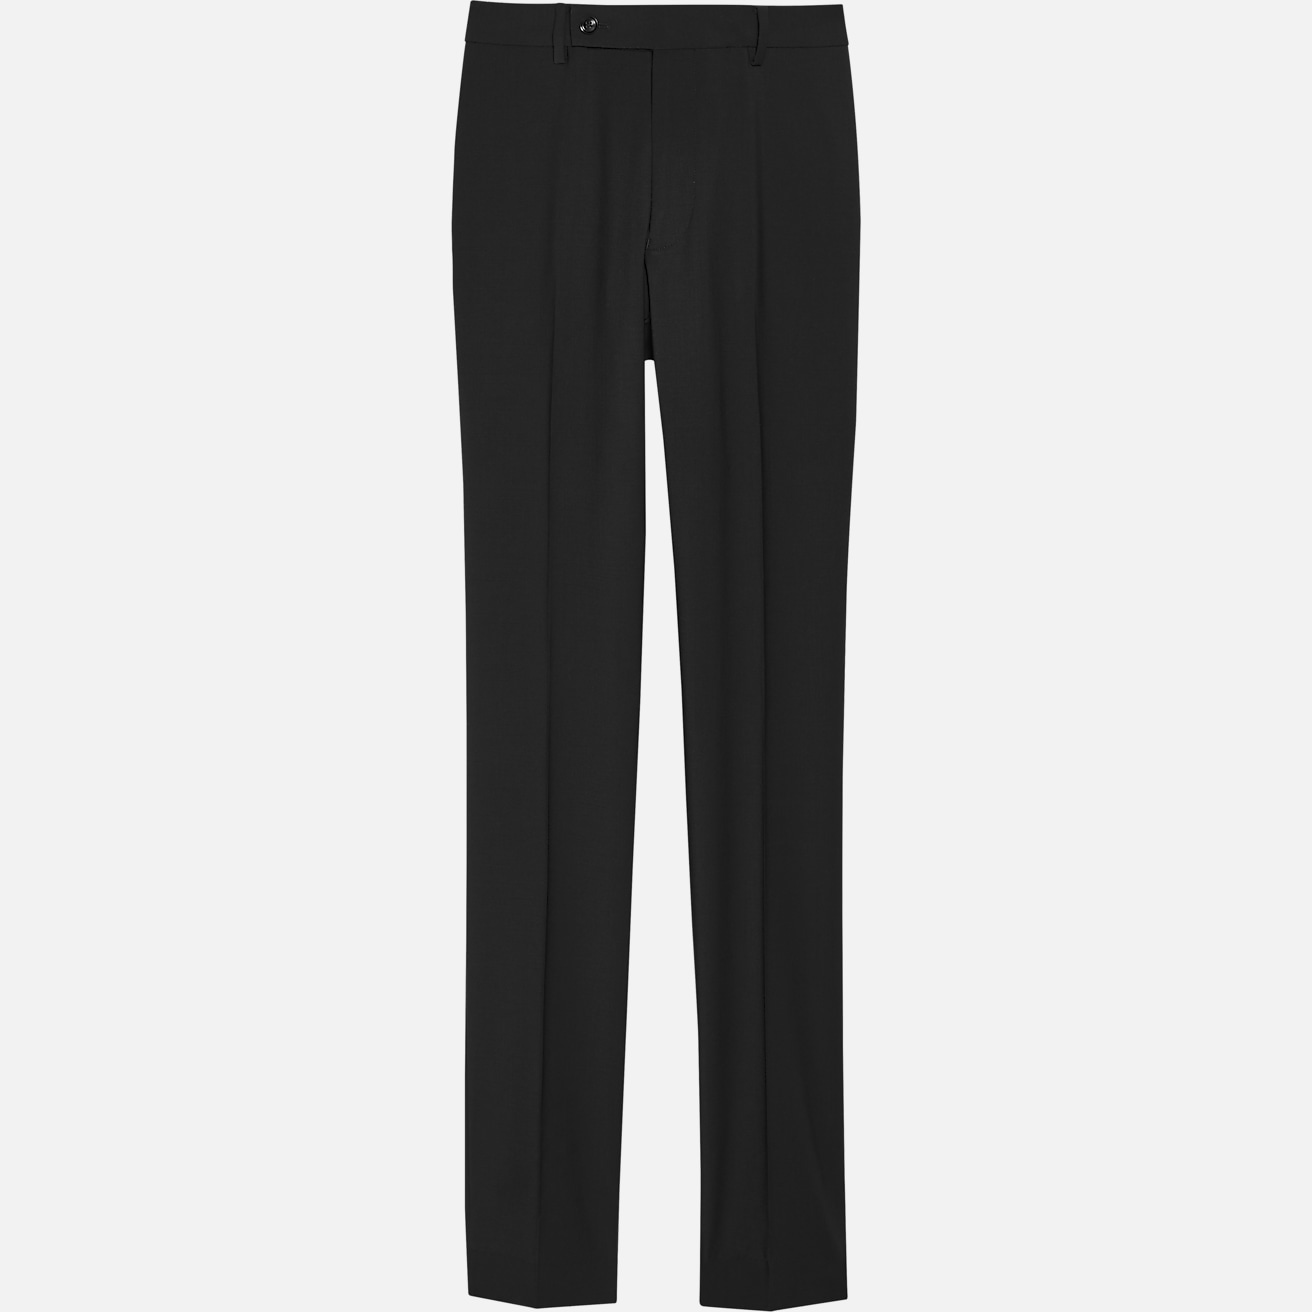 Calvin Klein Slim Fit Suit Separates Pants, Men's Pants